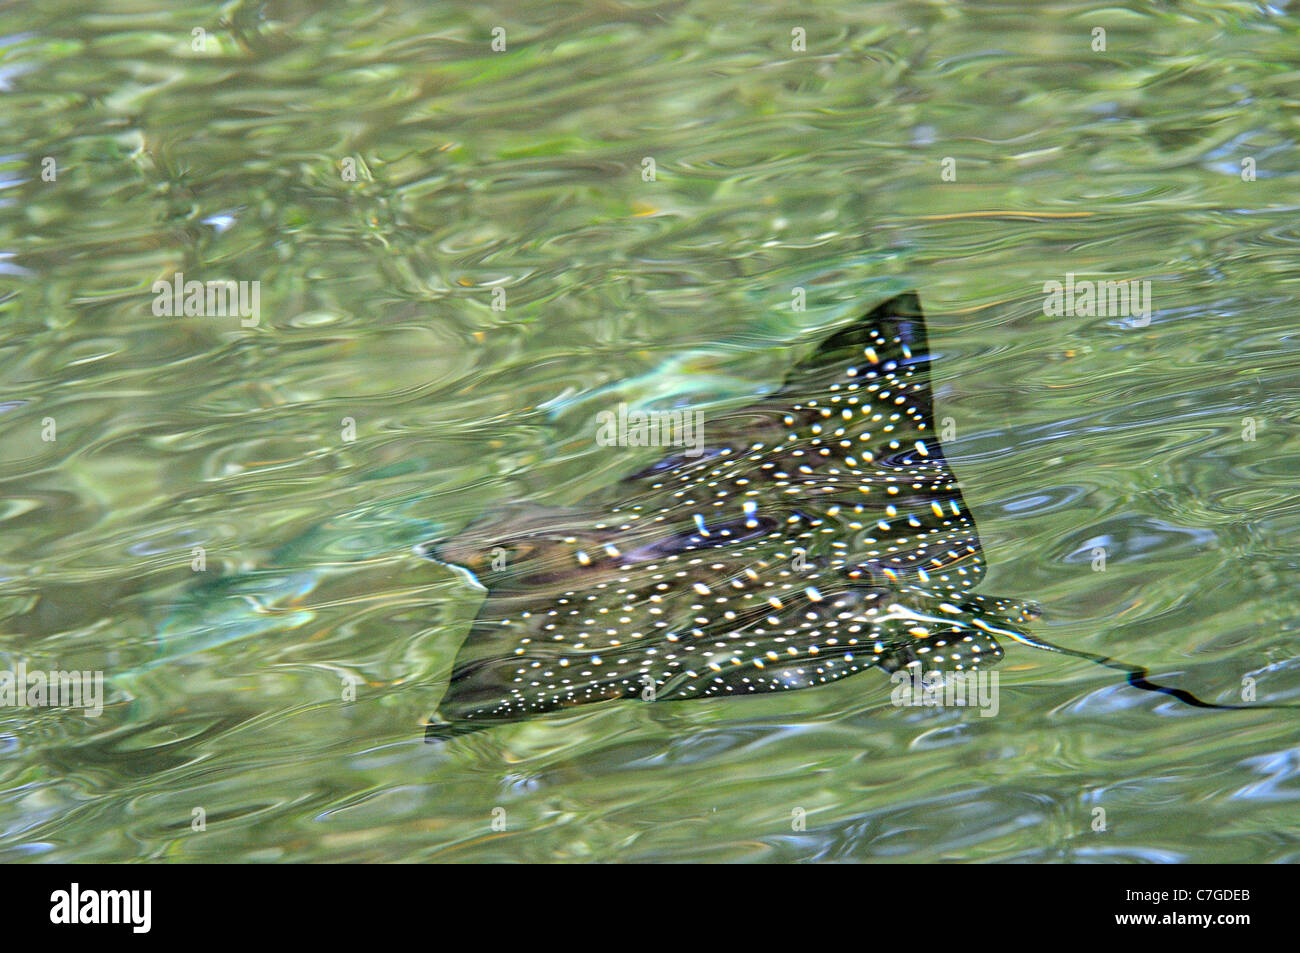 Spotted Eagle Ray (Aetobatus narinari) nager juste sous la surface de l'eau, des îles Galapagos, Equateur Banque D'Images